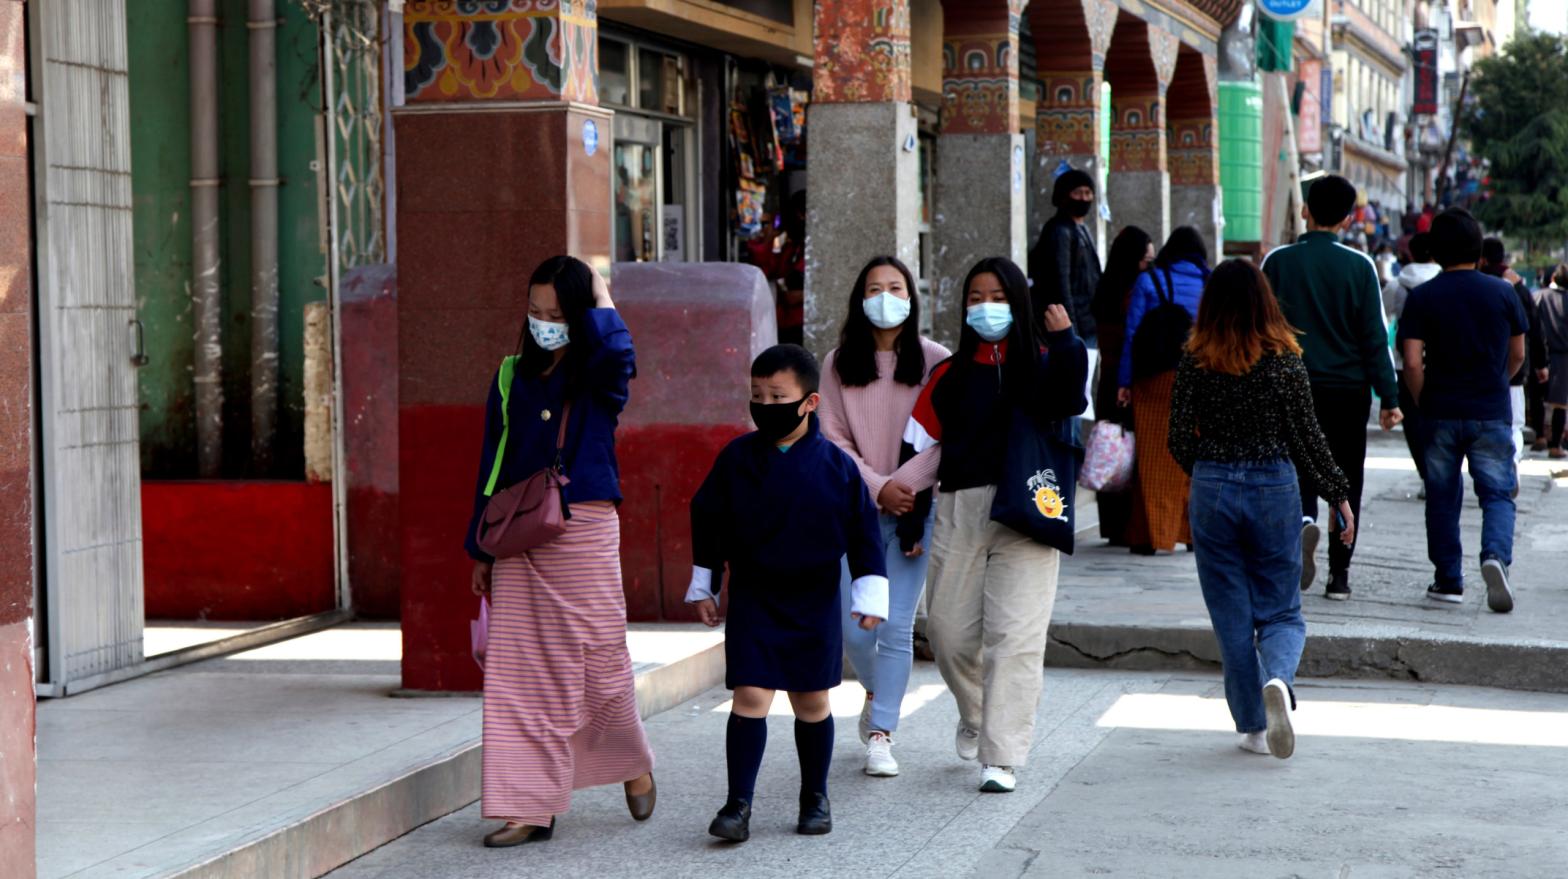 People walking down a street in Thimpu, Bhutan on Monday, April 12, 2021. (Photo: AP, AP)